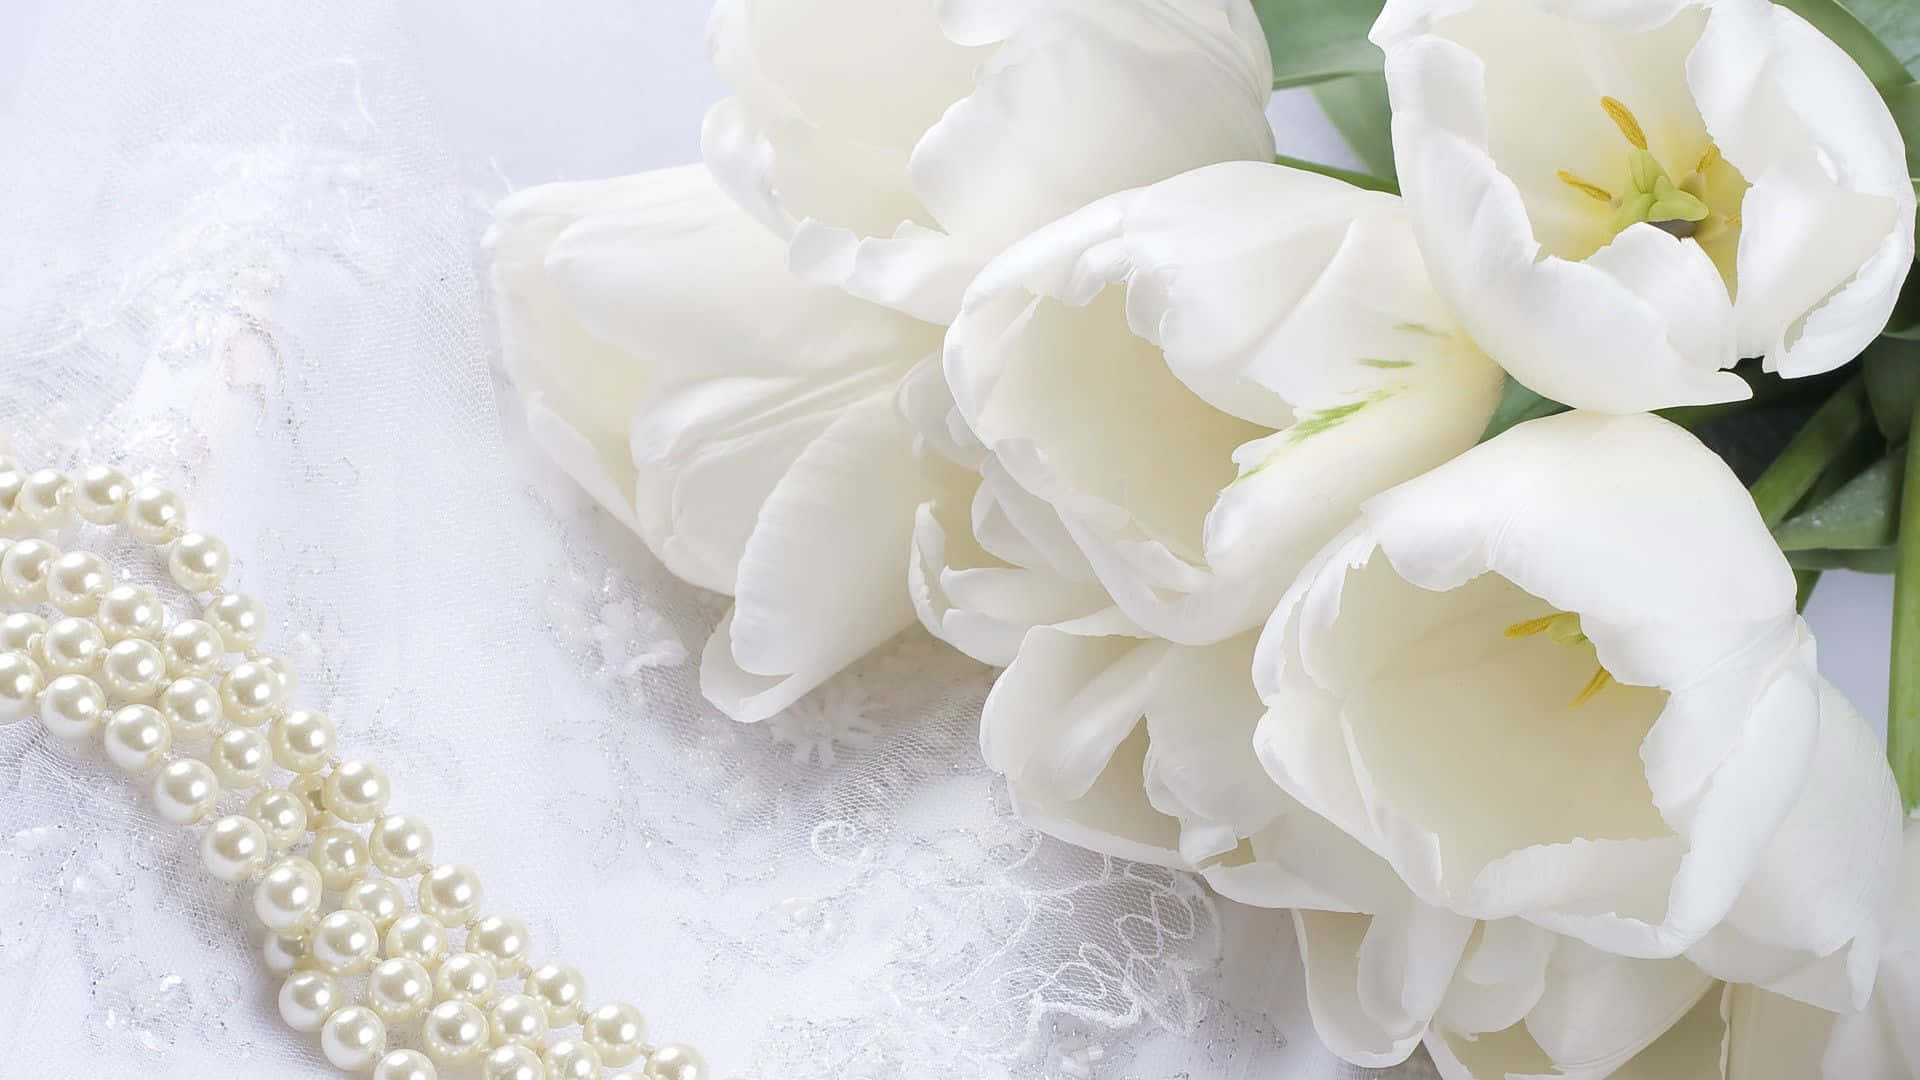 En udsøgt hvid rose, der skinner i sin skønhed. Wallpaper